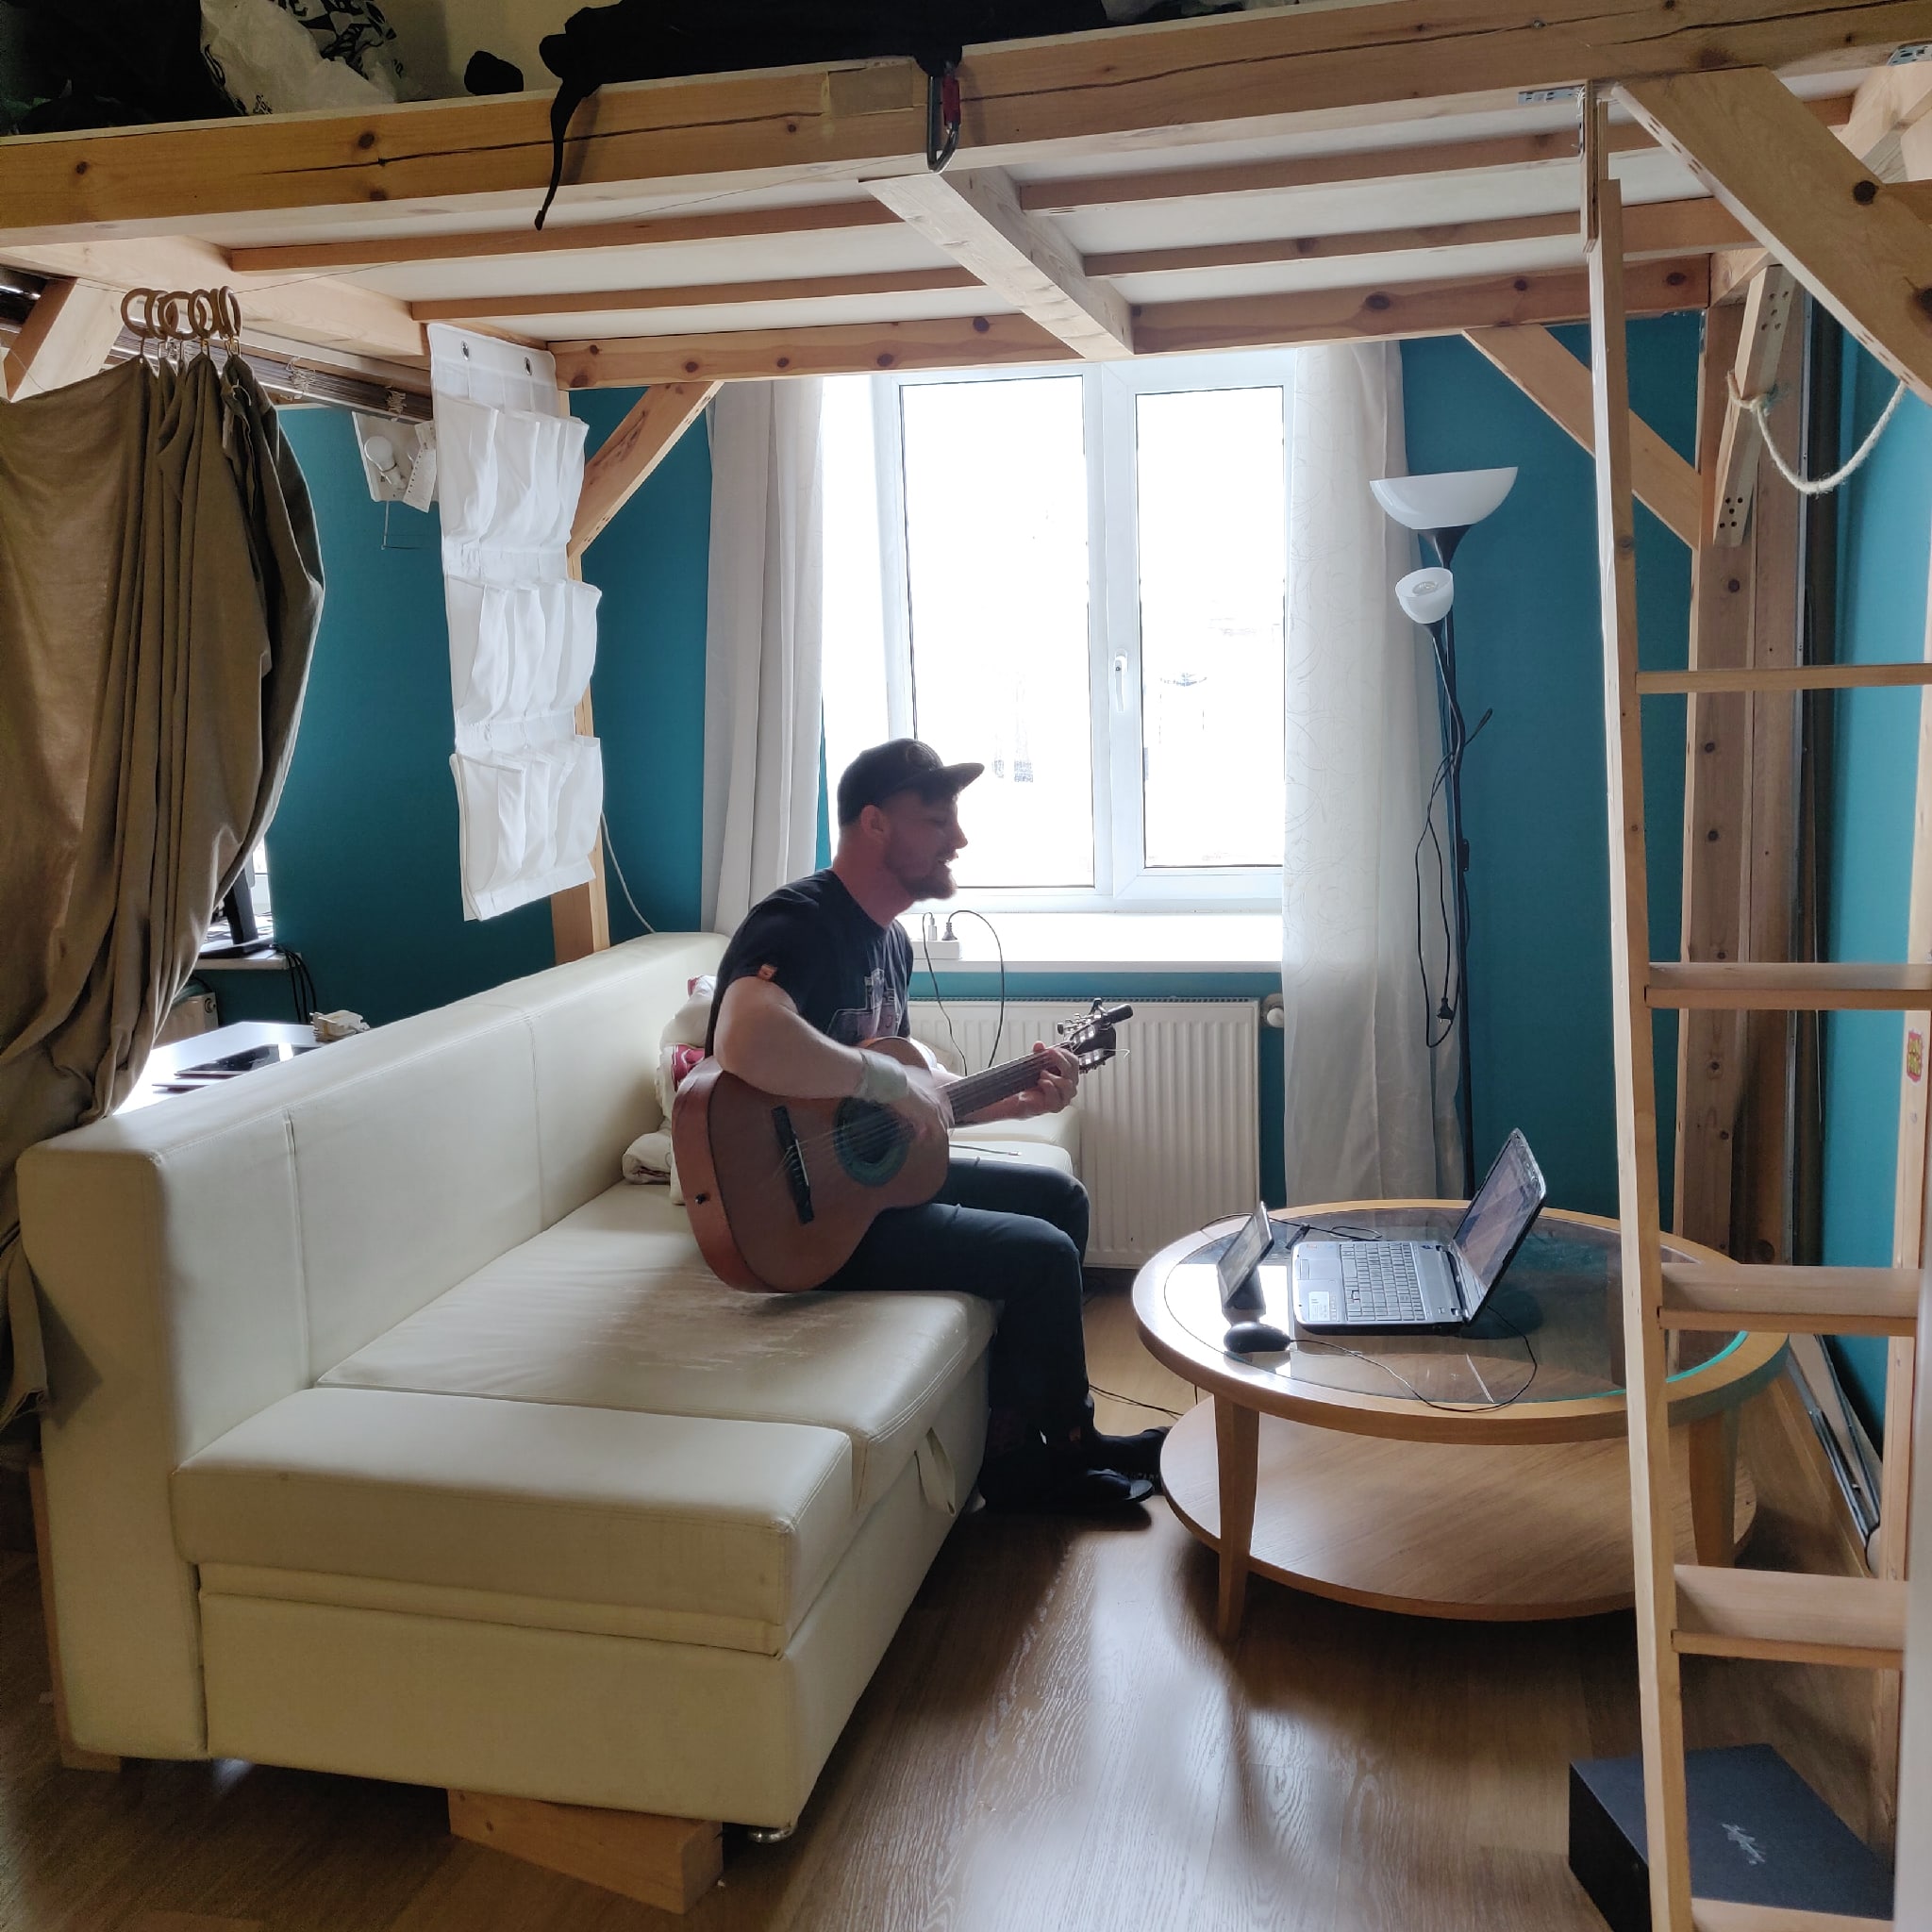 Общежитие по-русски: пять историй о жизни в коливинге